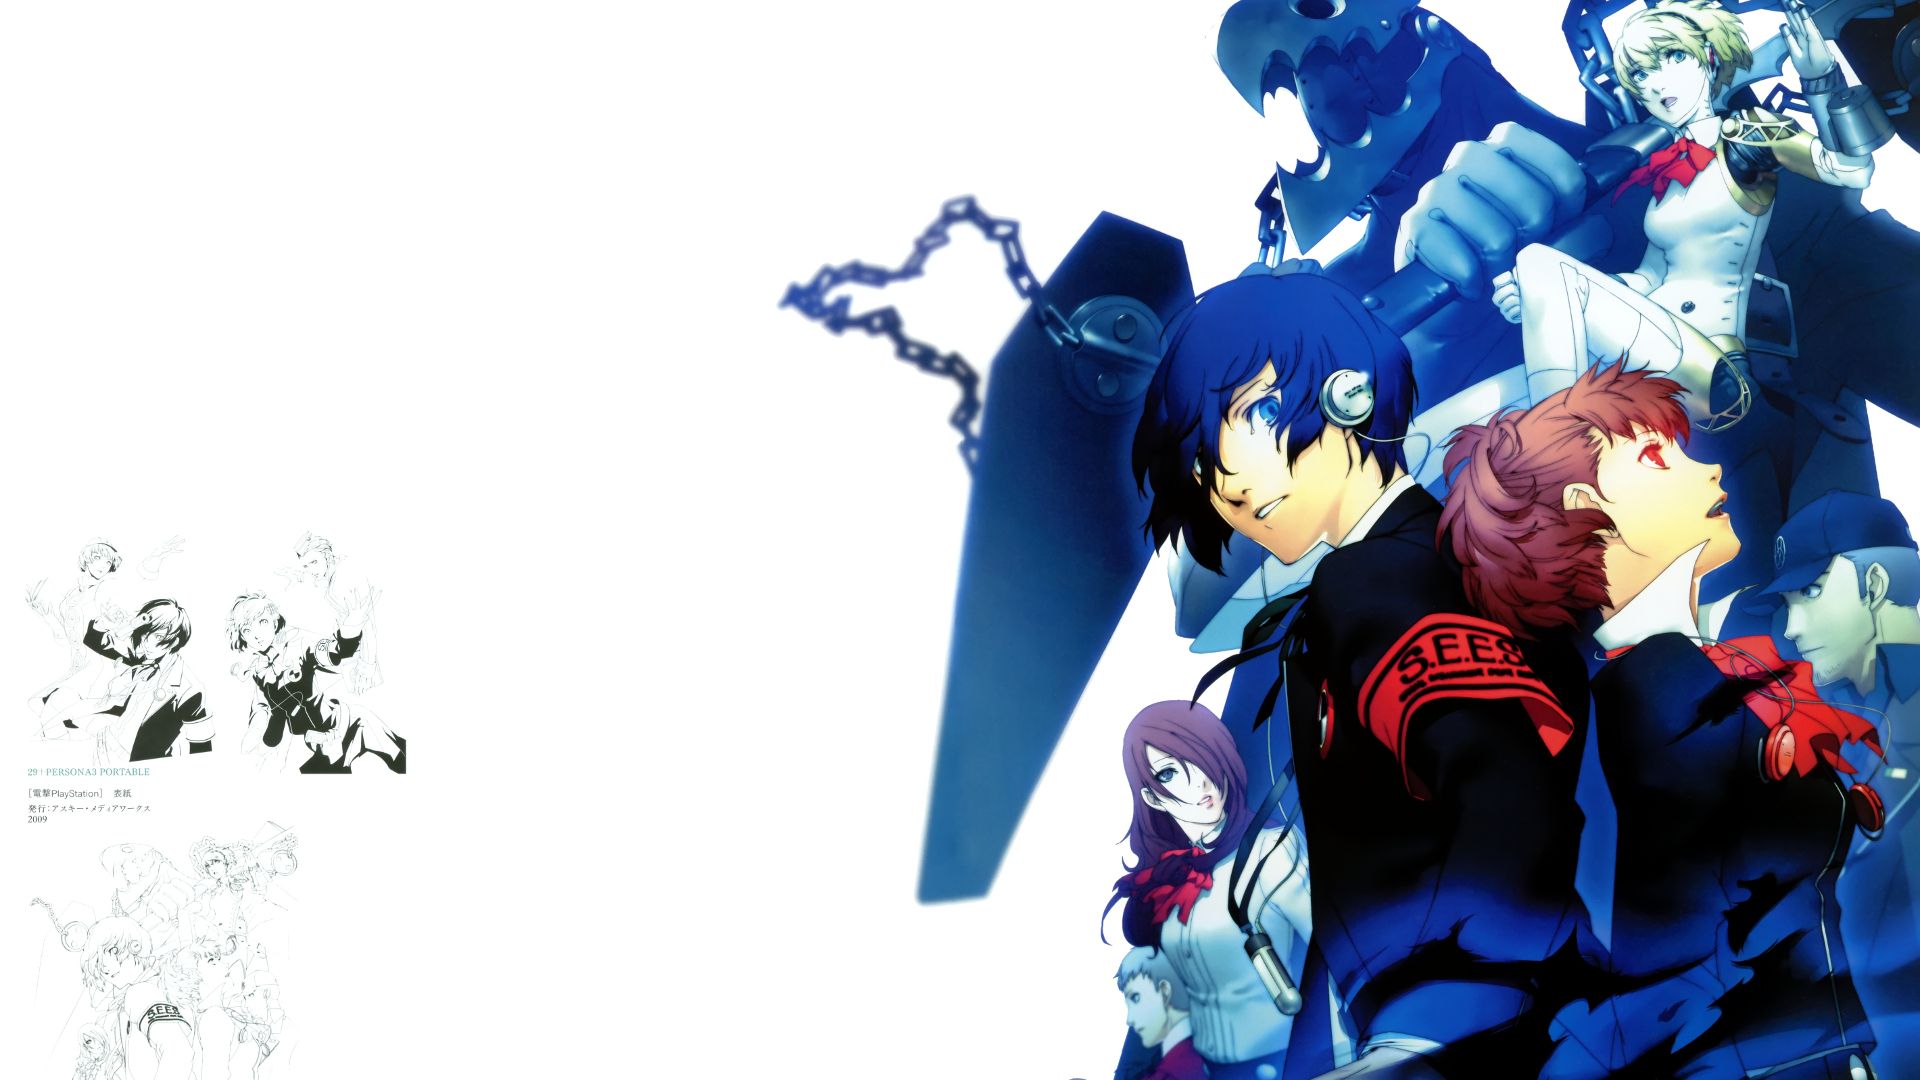 Persona 3 Portable e Persona 4 Golden - Detalhes das Vesões Atuais dos Games são Revelados